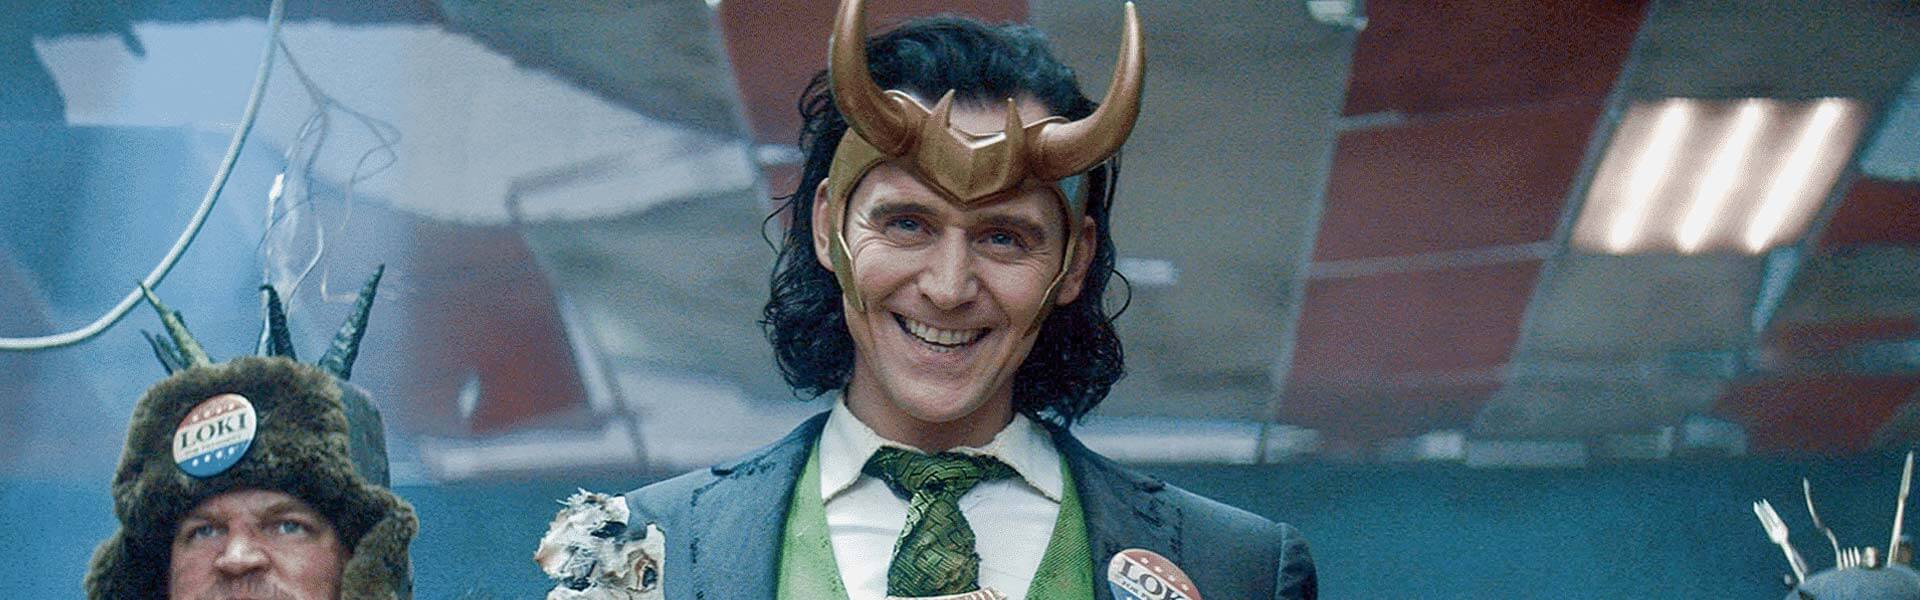 ‘Loki’: ¿cómo ver online y gratis la serie de Marvel en Disney+?